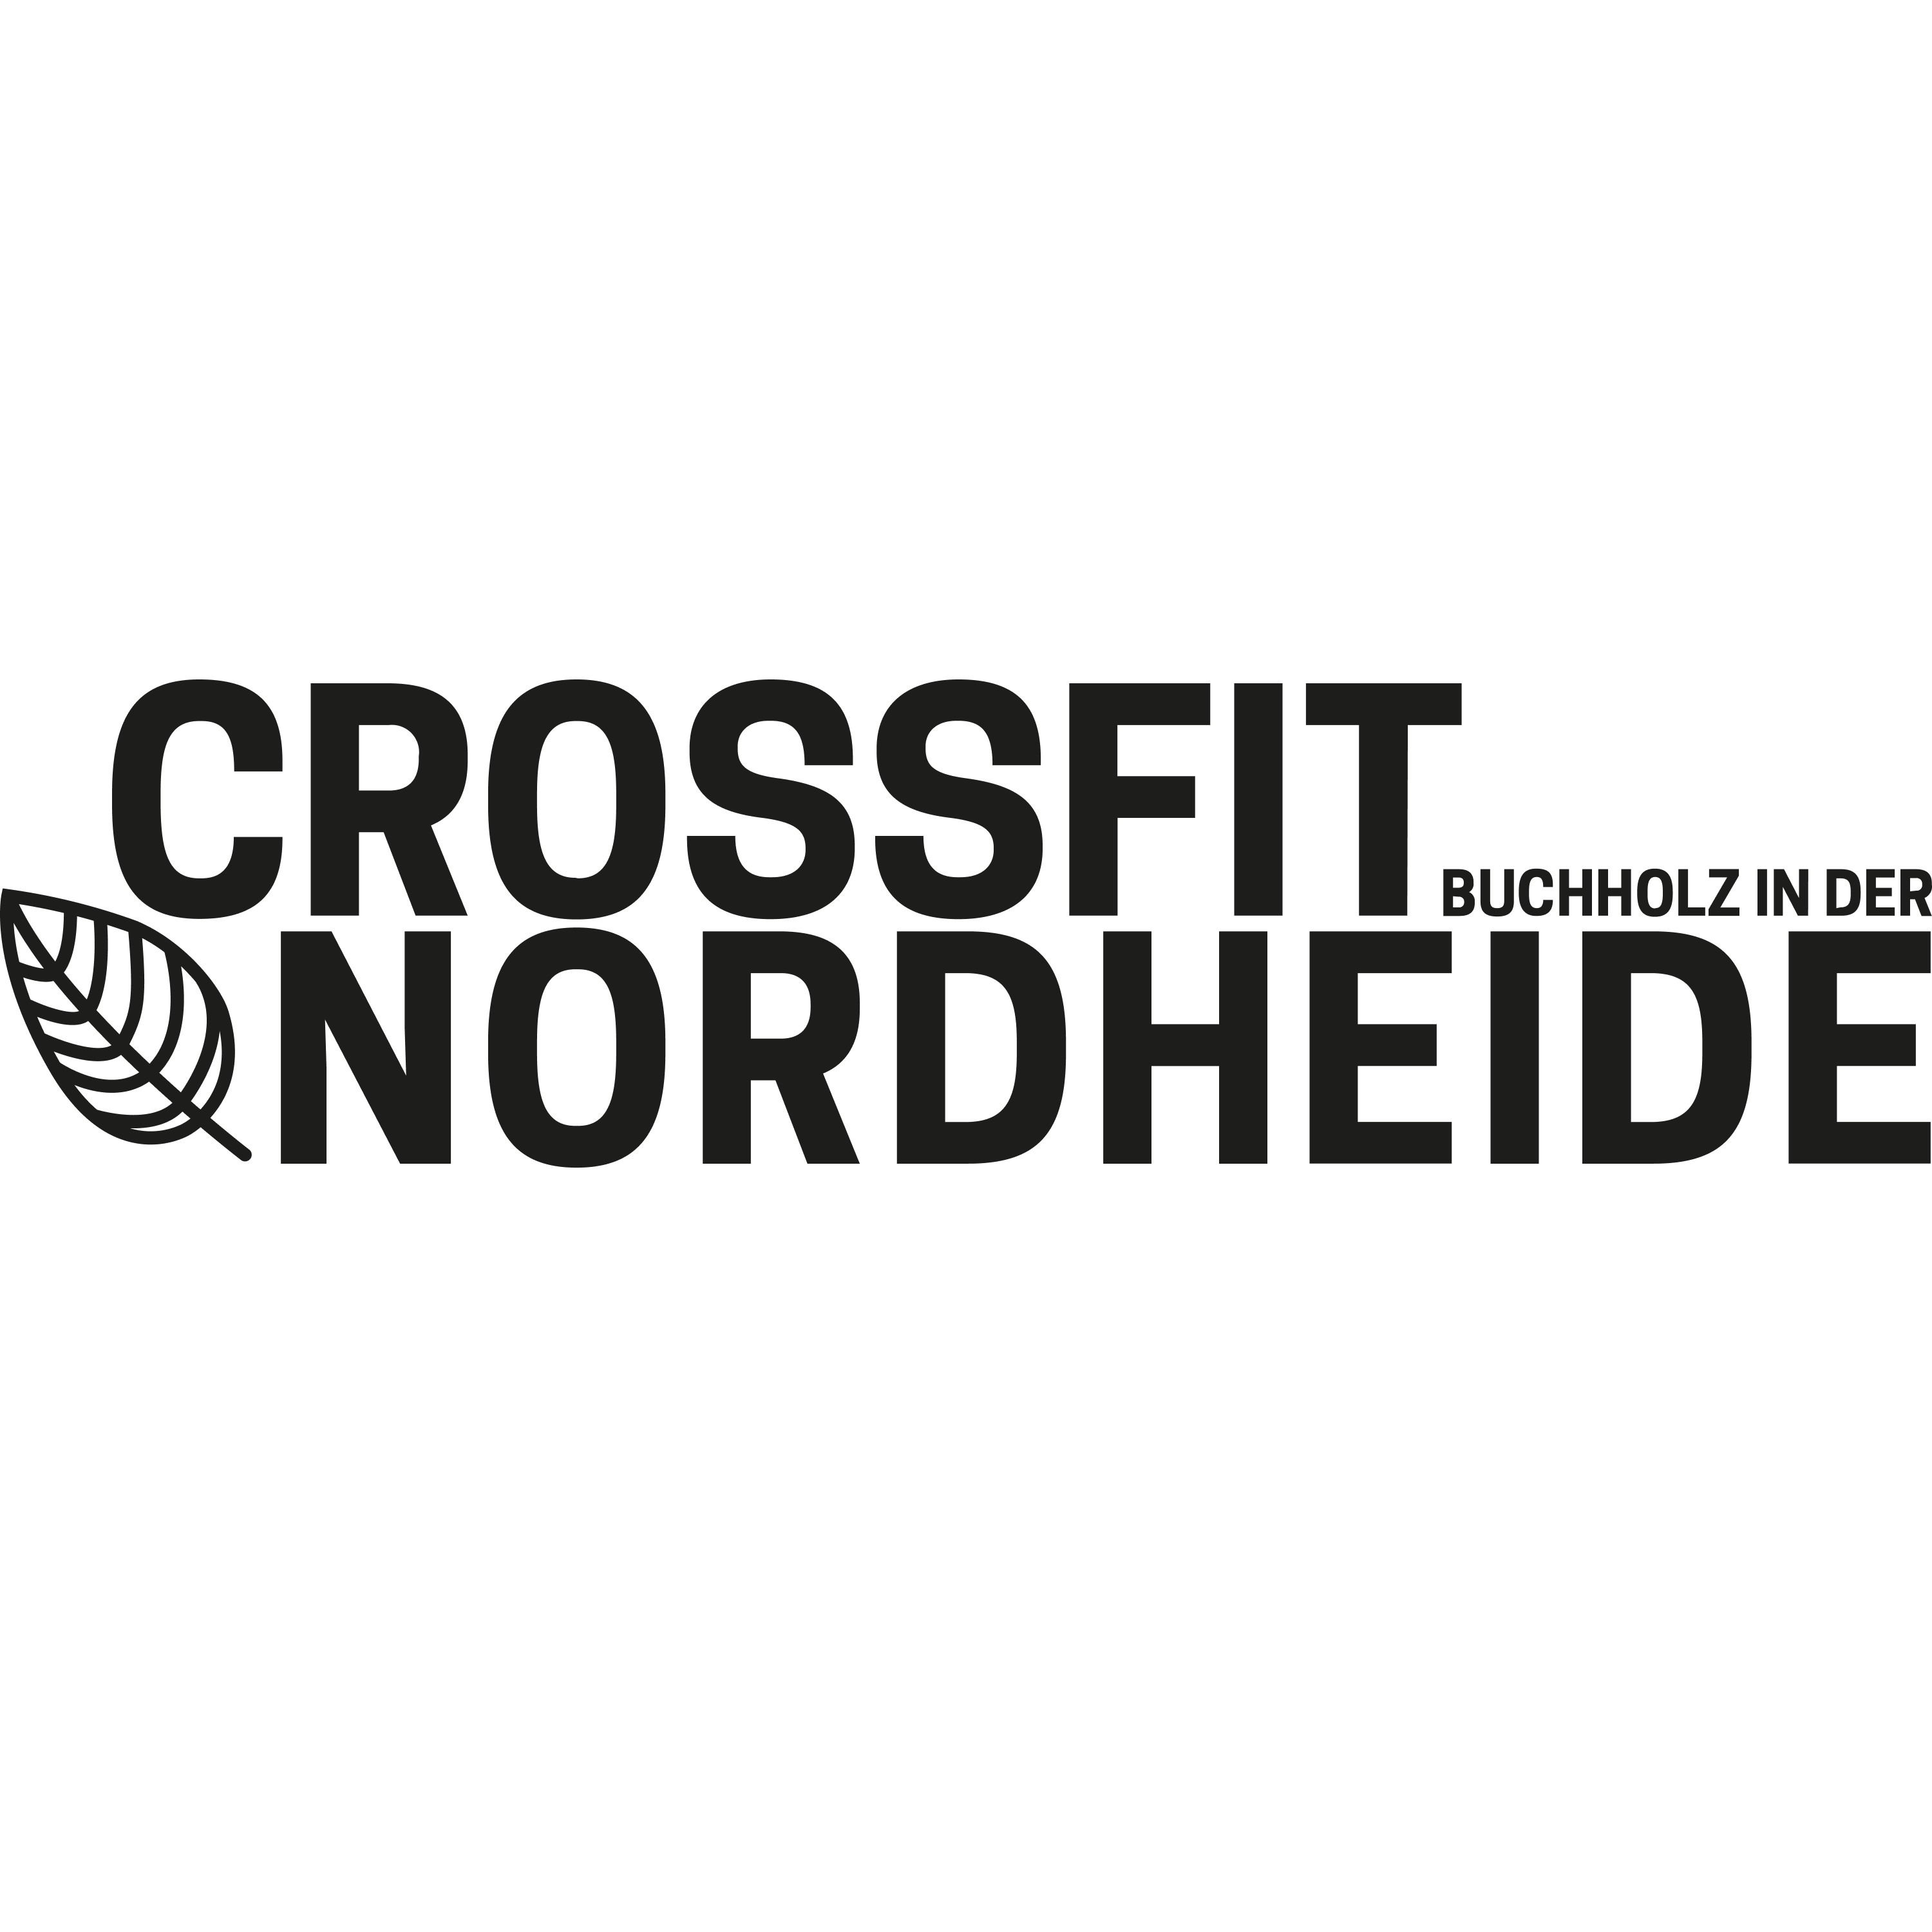 Crossfit Nordheide